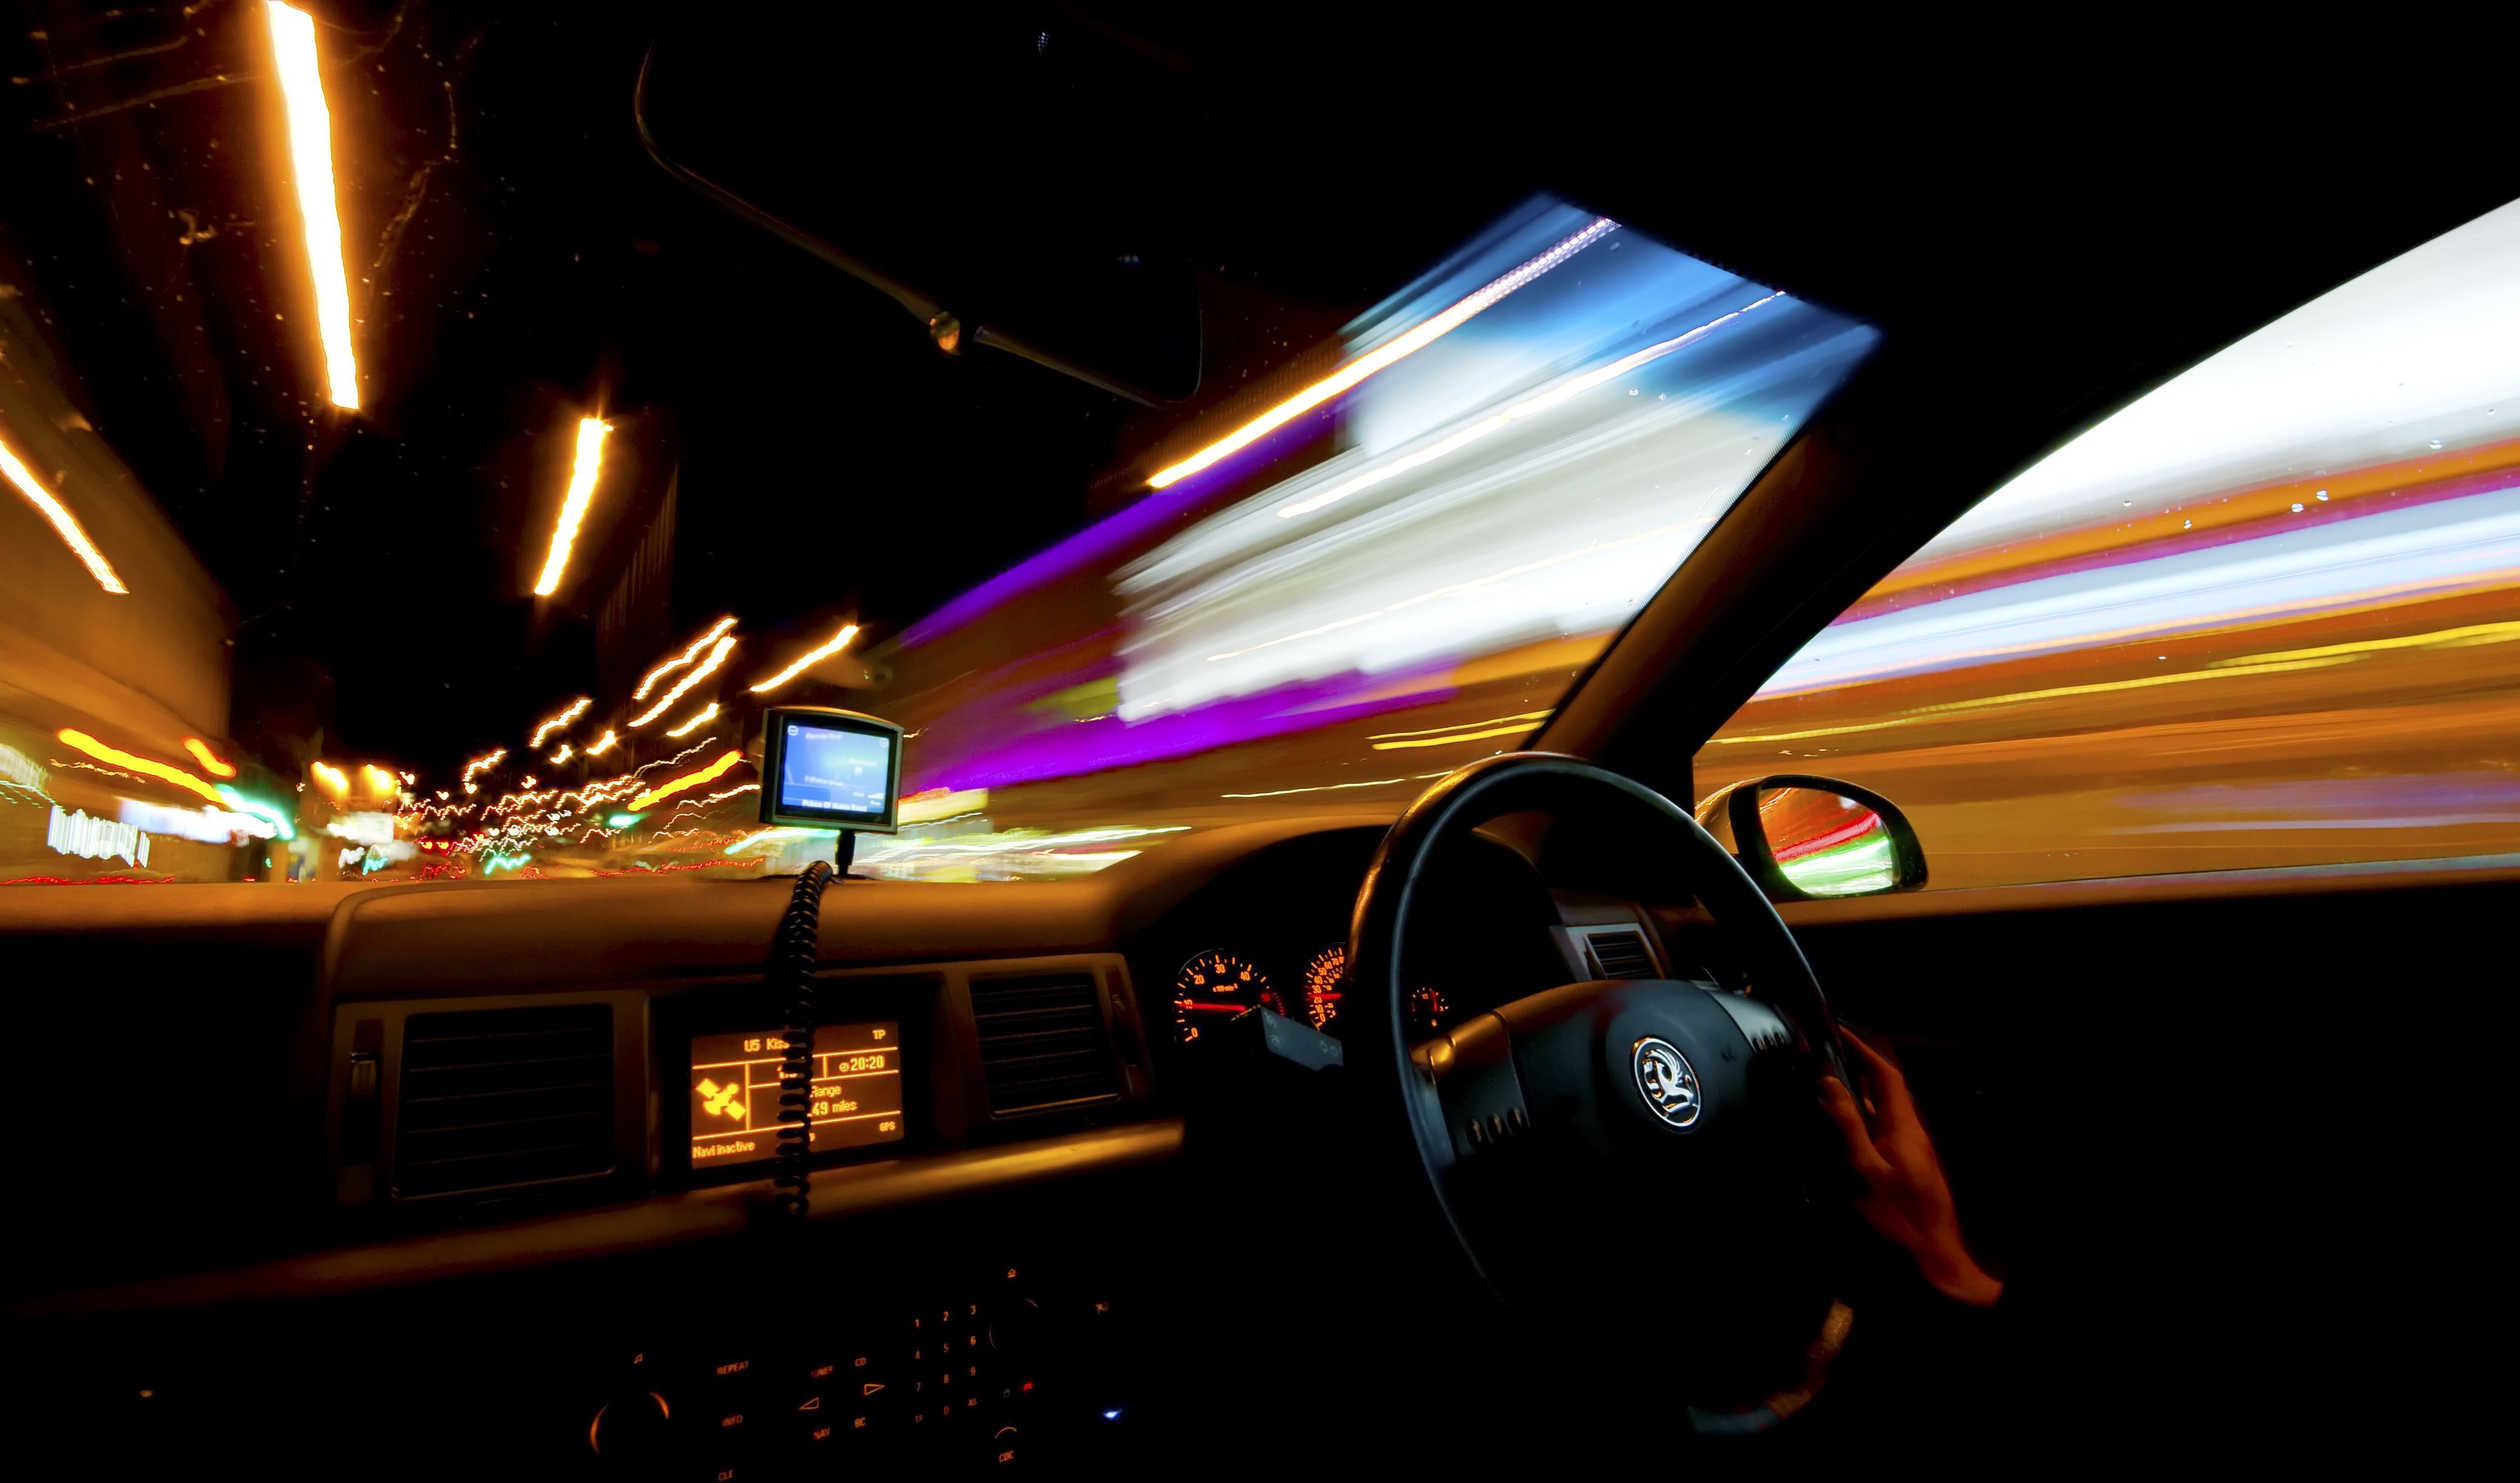 Видео скорости на машине. Красивый вид из машины. Салон машины ночью. Вид из салона автомобиля. Ночная дорога вид из машины.